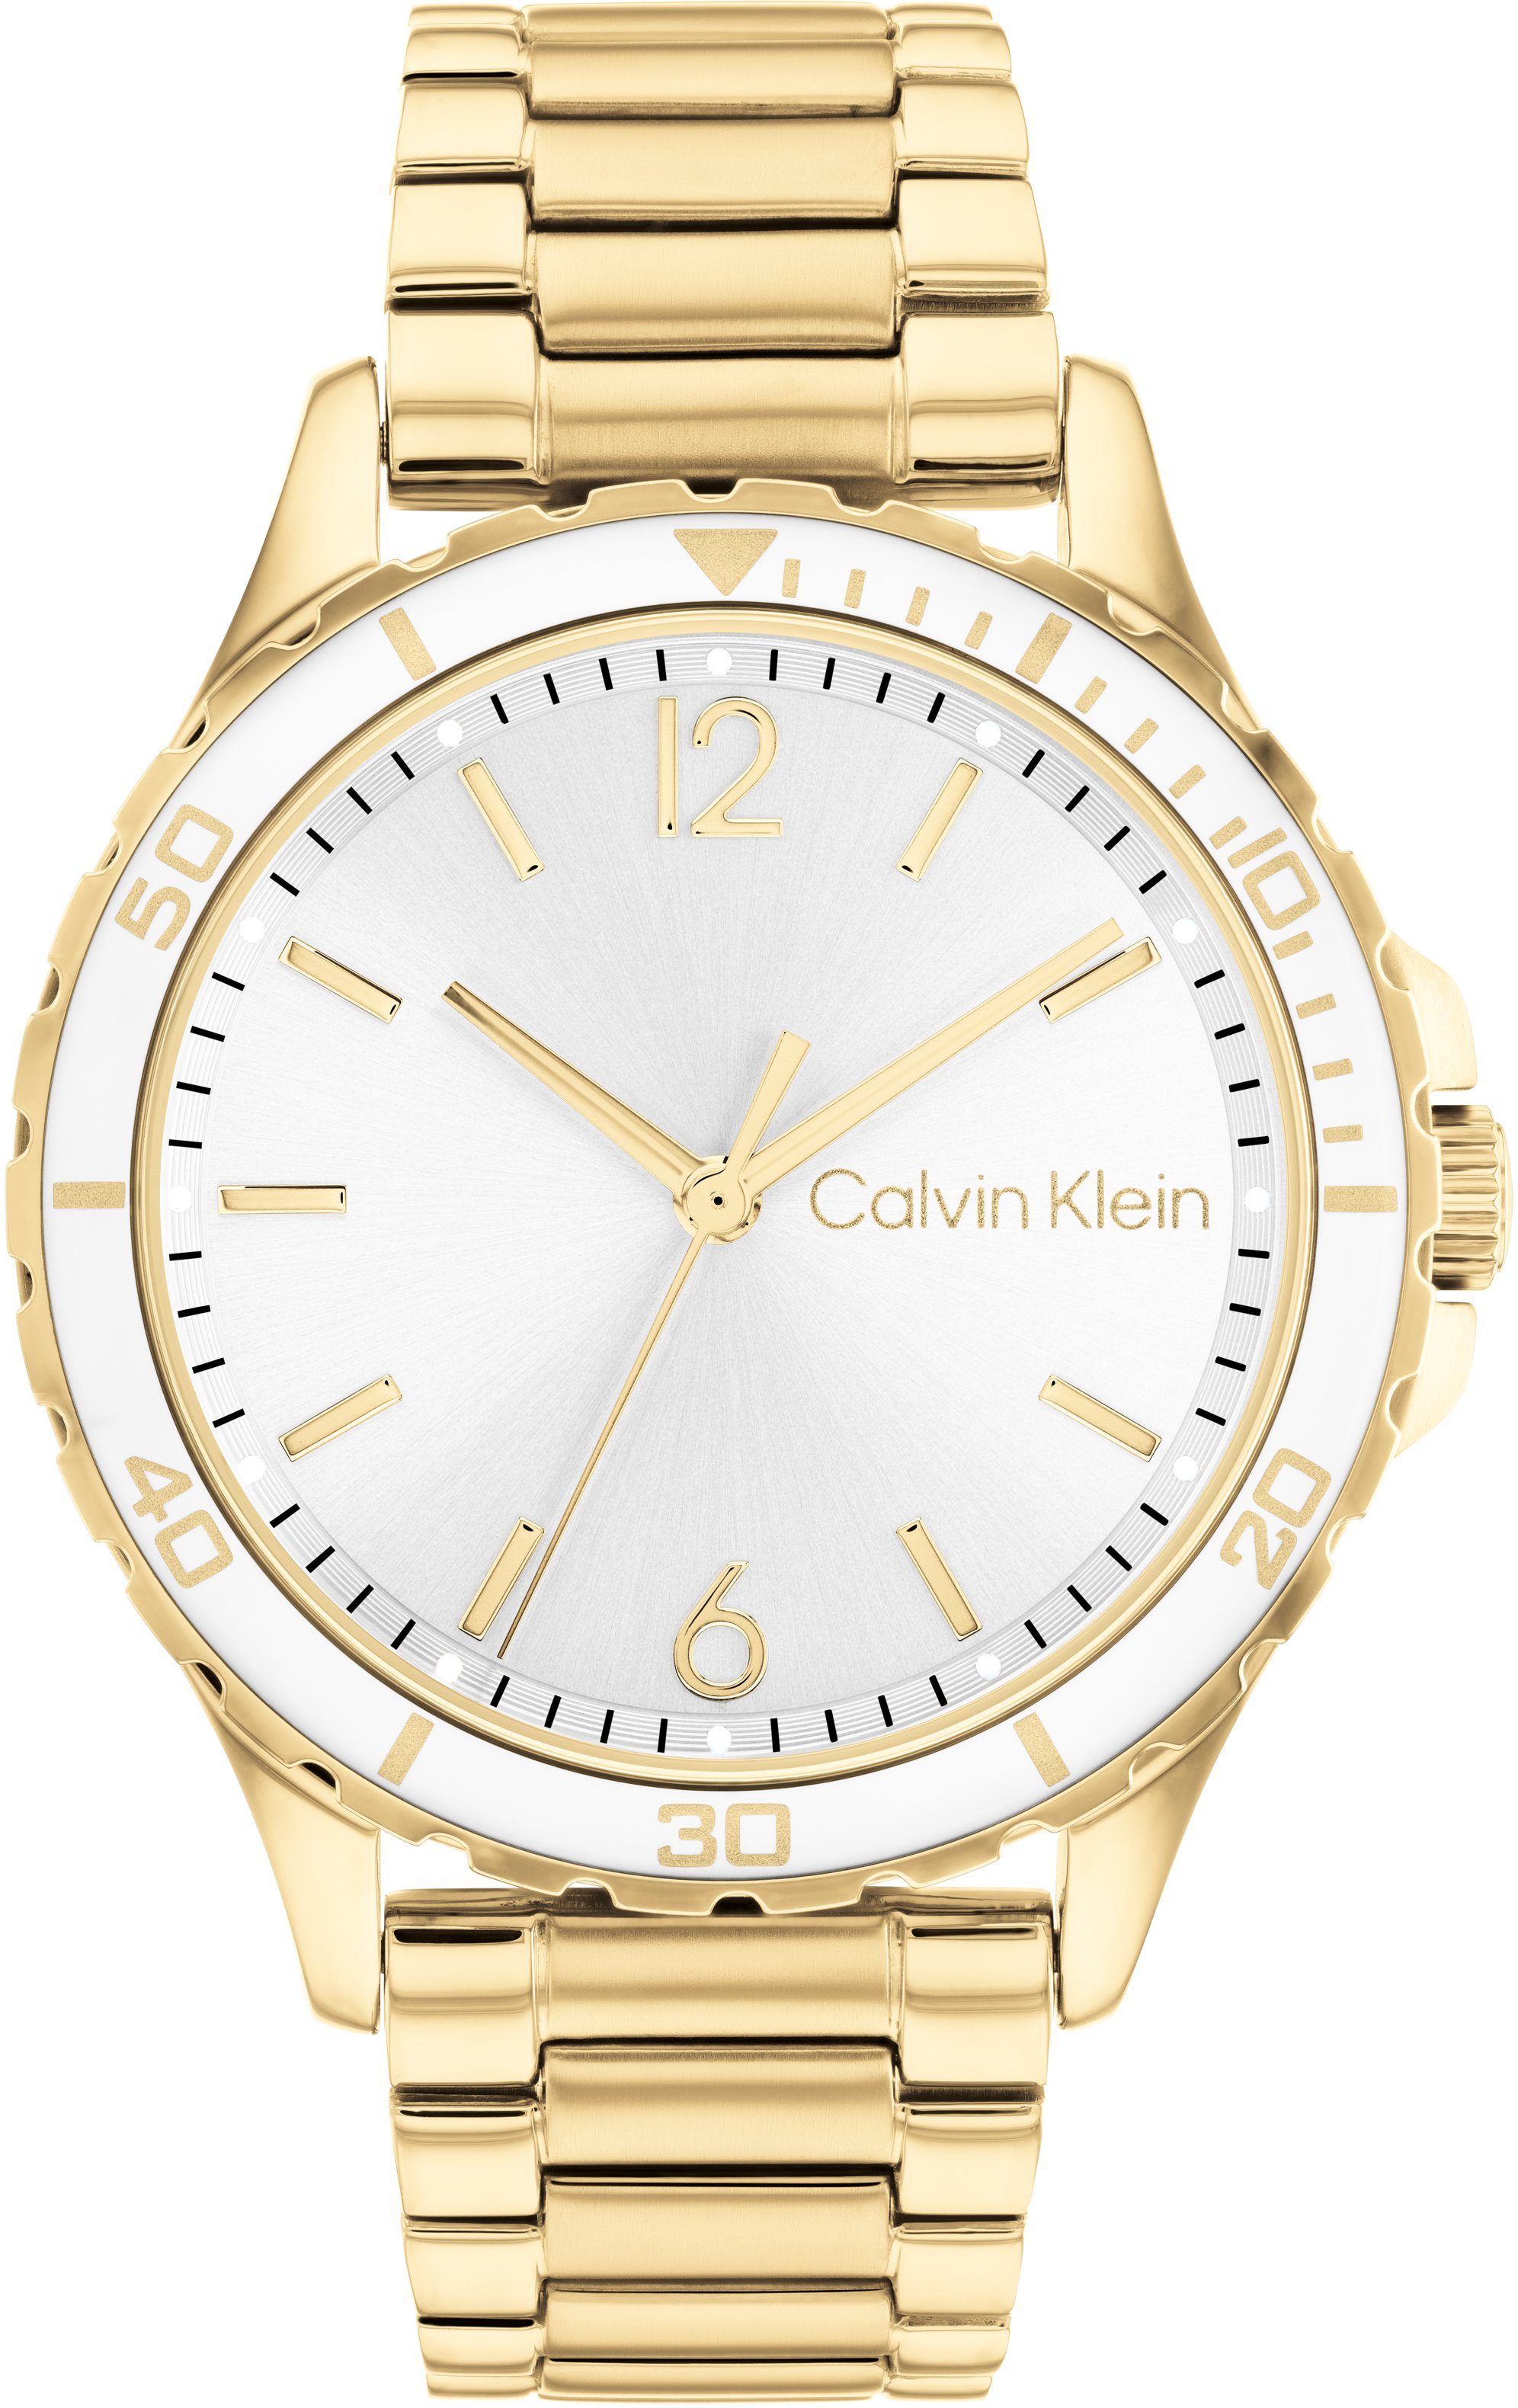 Calvin Klein Quarzuhr SPORT FOR HER, 25200099, Armbanduhr, Damenuhr, Mineralglas, IP-Beschichtung